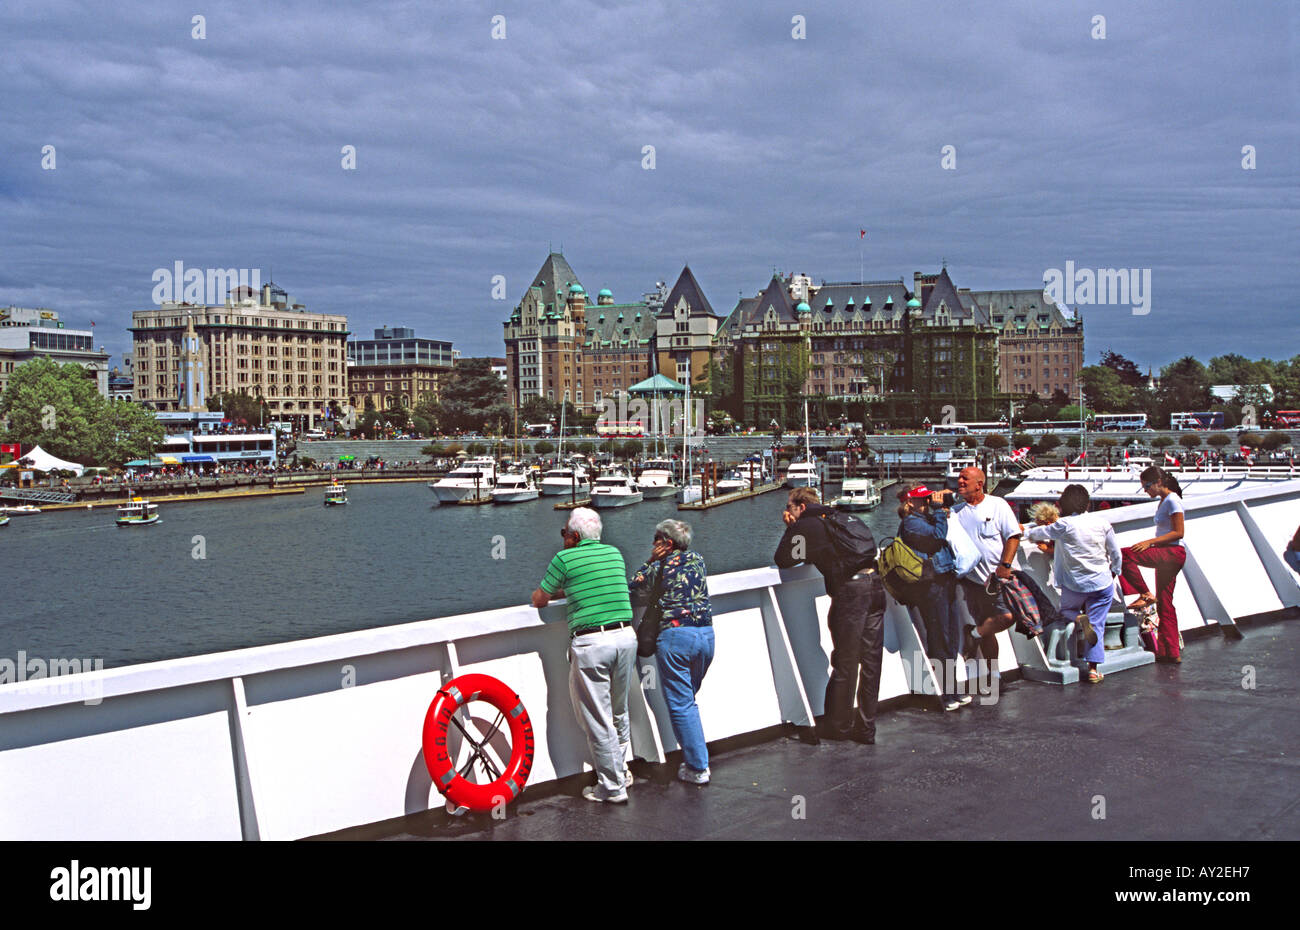 L'Hôtel Fairmont Empress à Victoria, Colombie-Britannique, Canada vue depuis le pont du ferry Coho. Banque D'Images